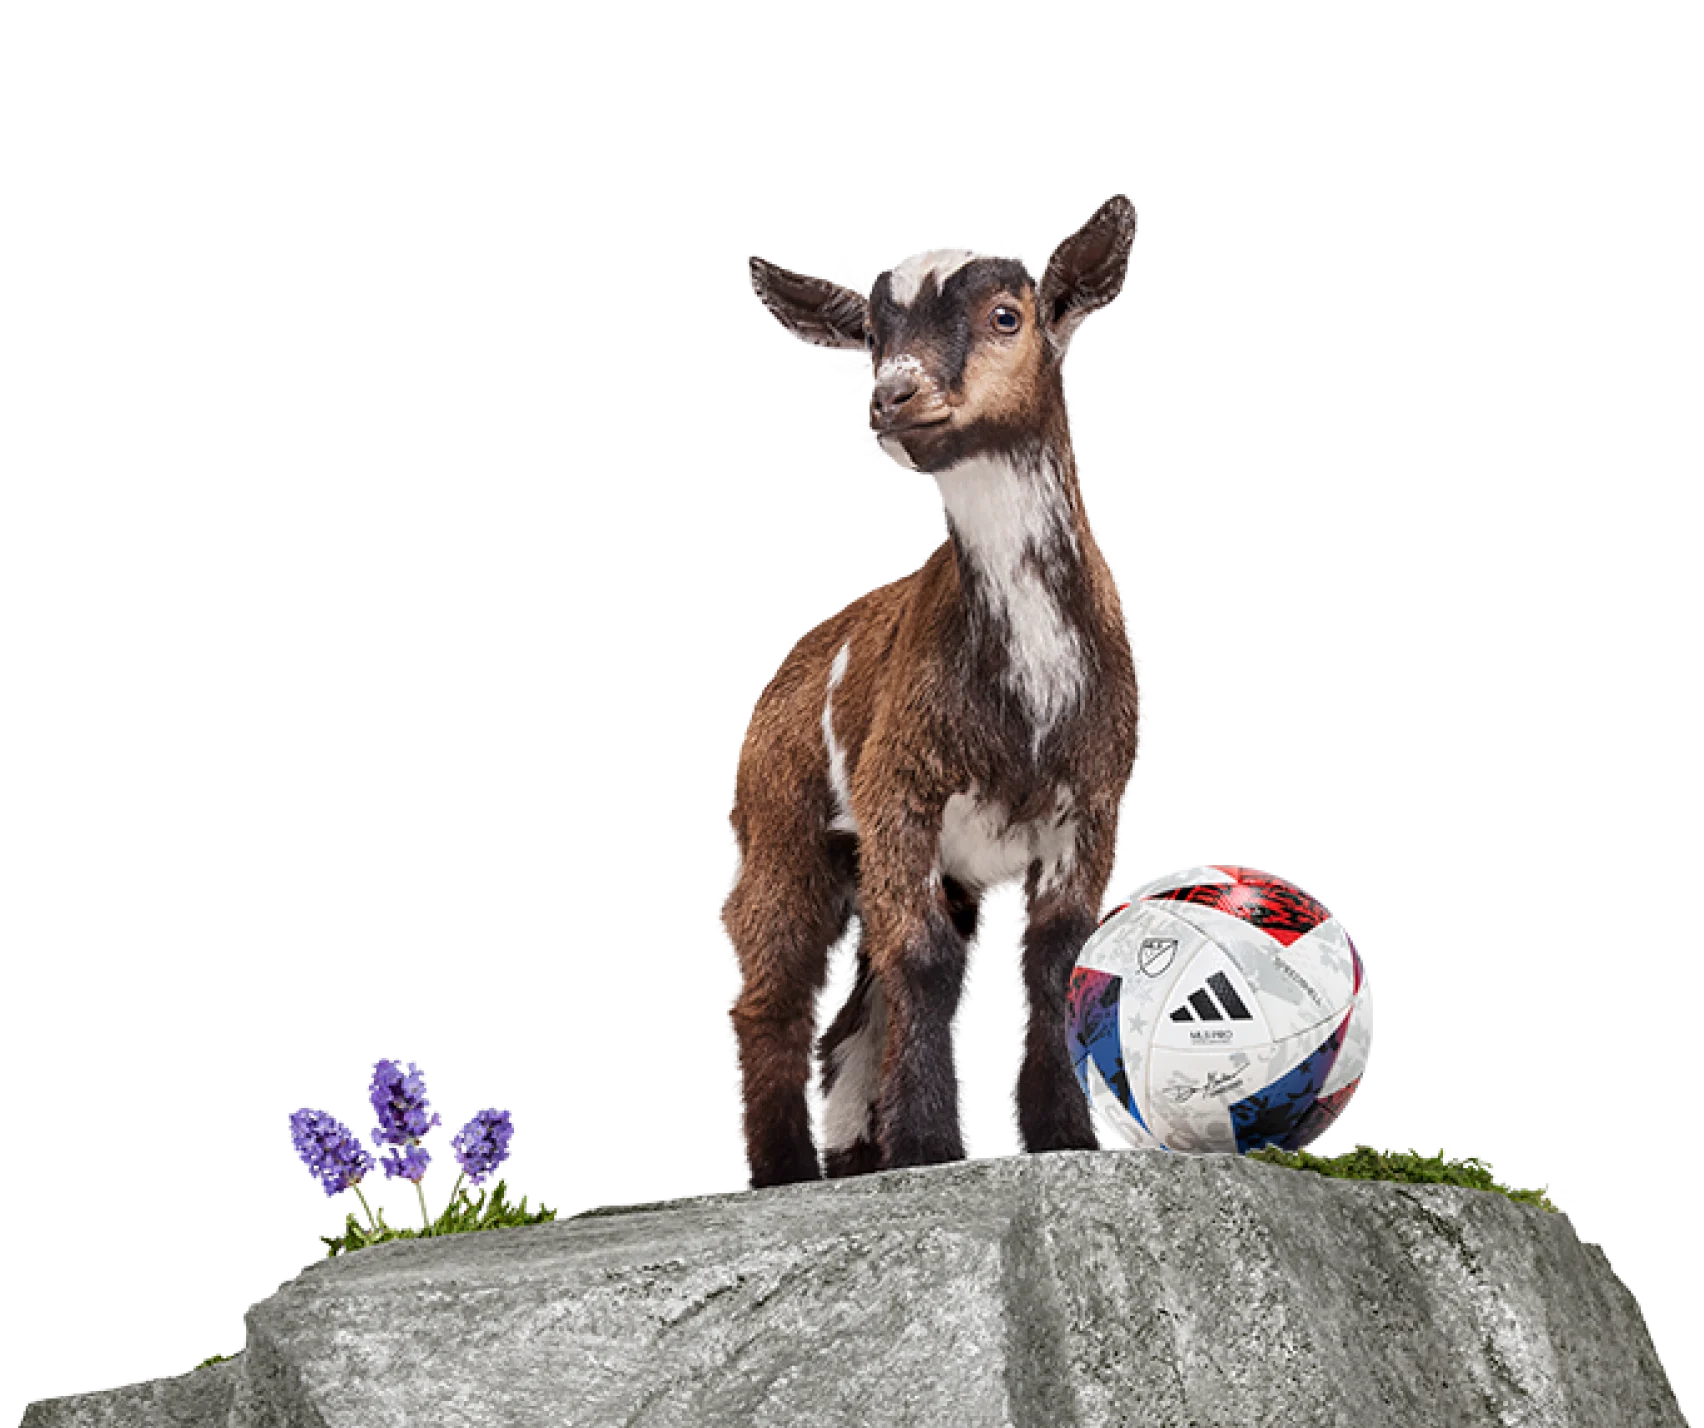 Une chèvre TELUS derrière un ballon de soccer.